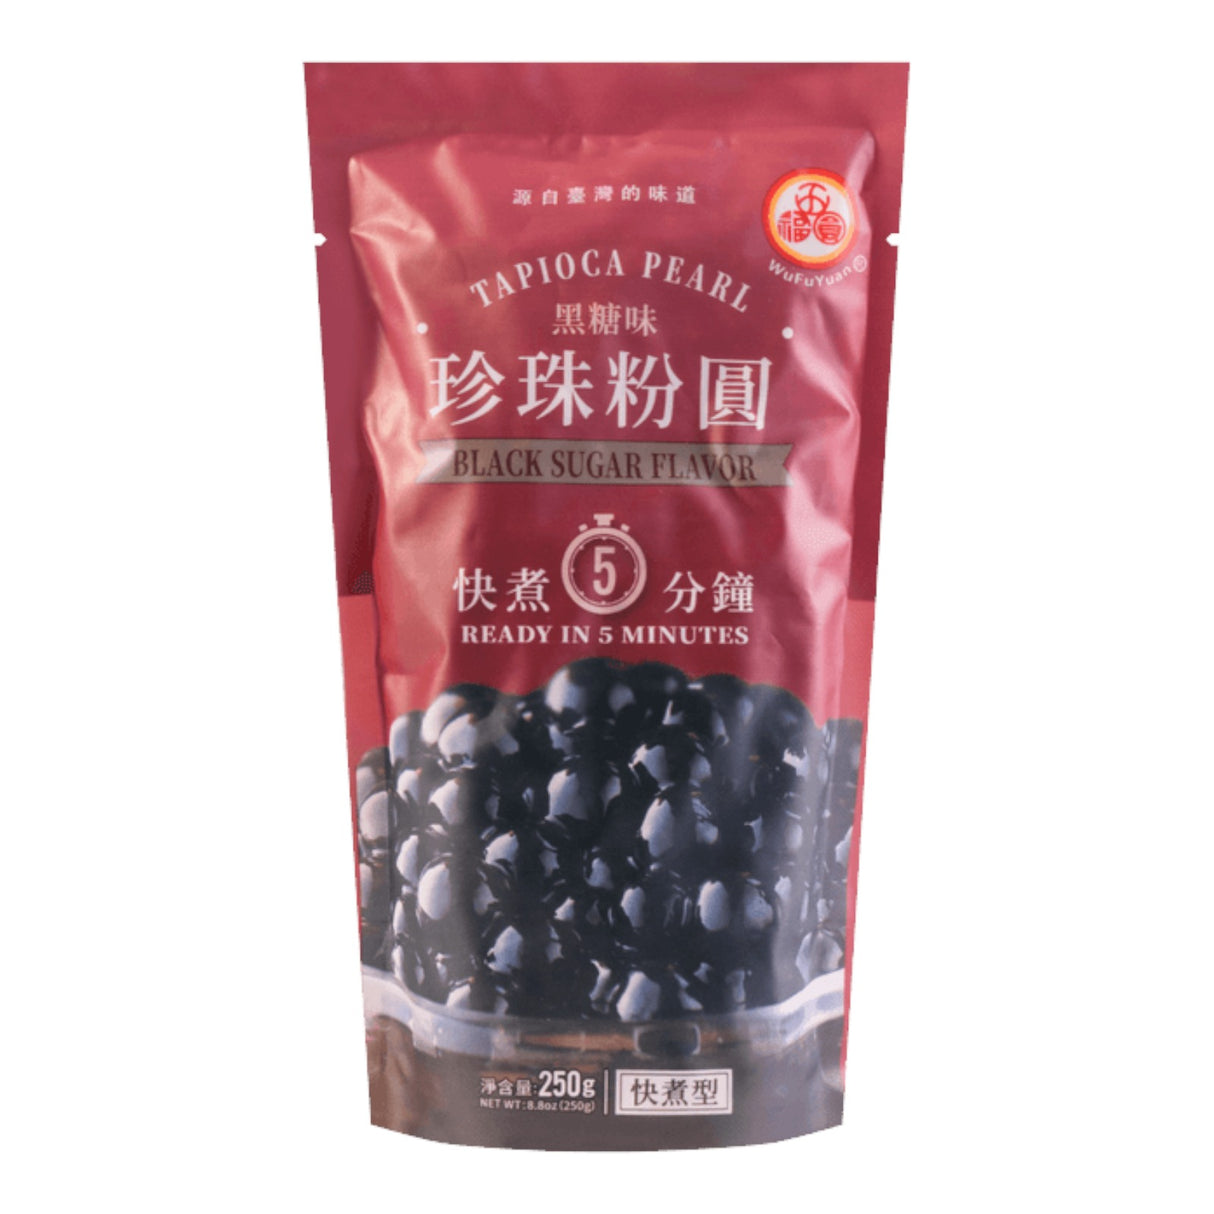 WuFuYuan Tapioca Pearl Black Sugar Flavor